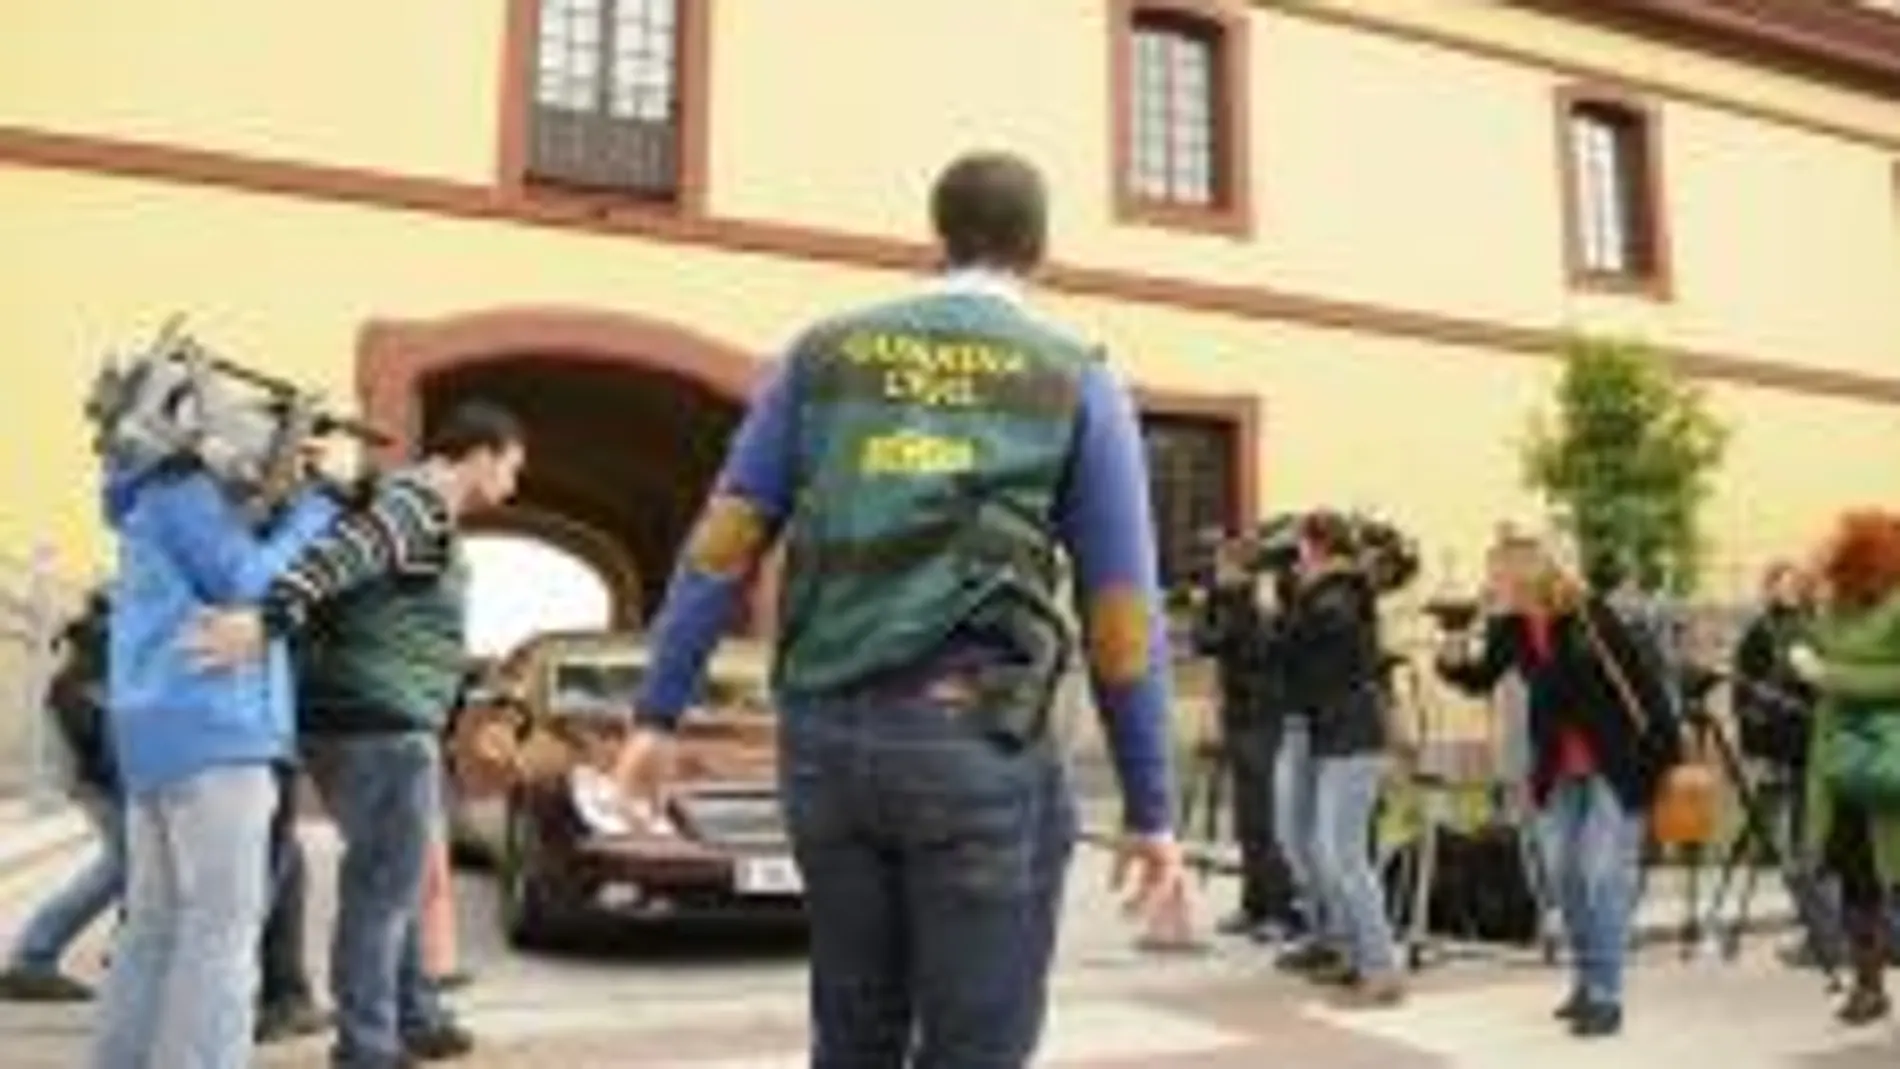 Agentes de la Unidad Central Operativa (UCO) de la Guardia Civil protegen la salida de un vehículo en la sede de la Diputación Provincial de Sevilla